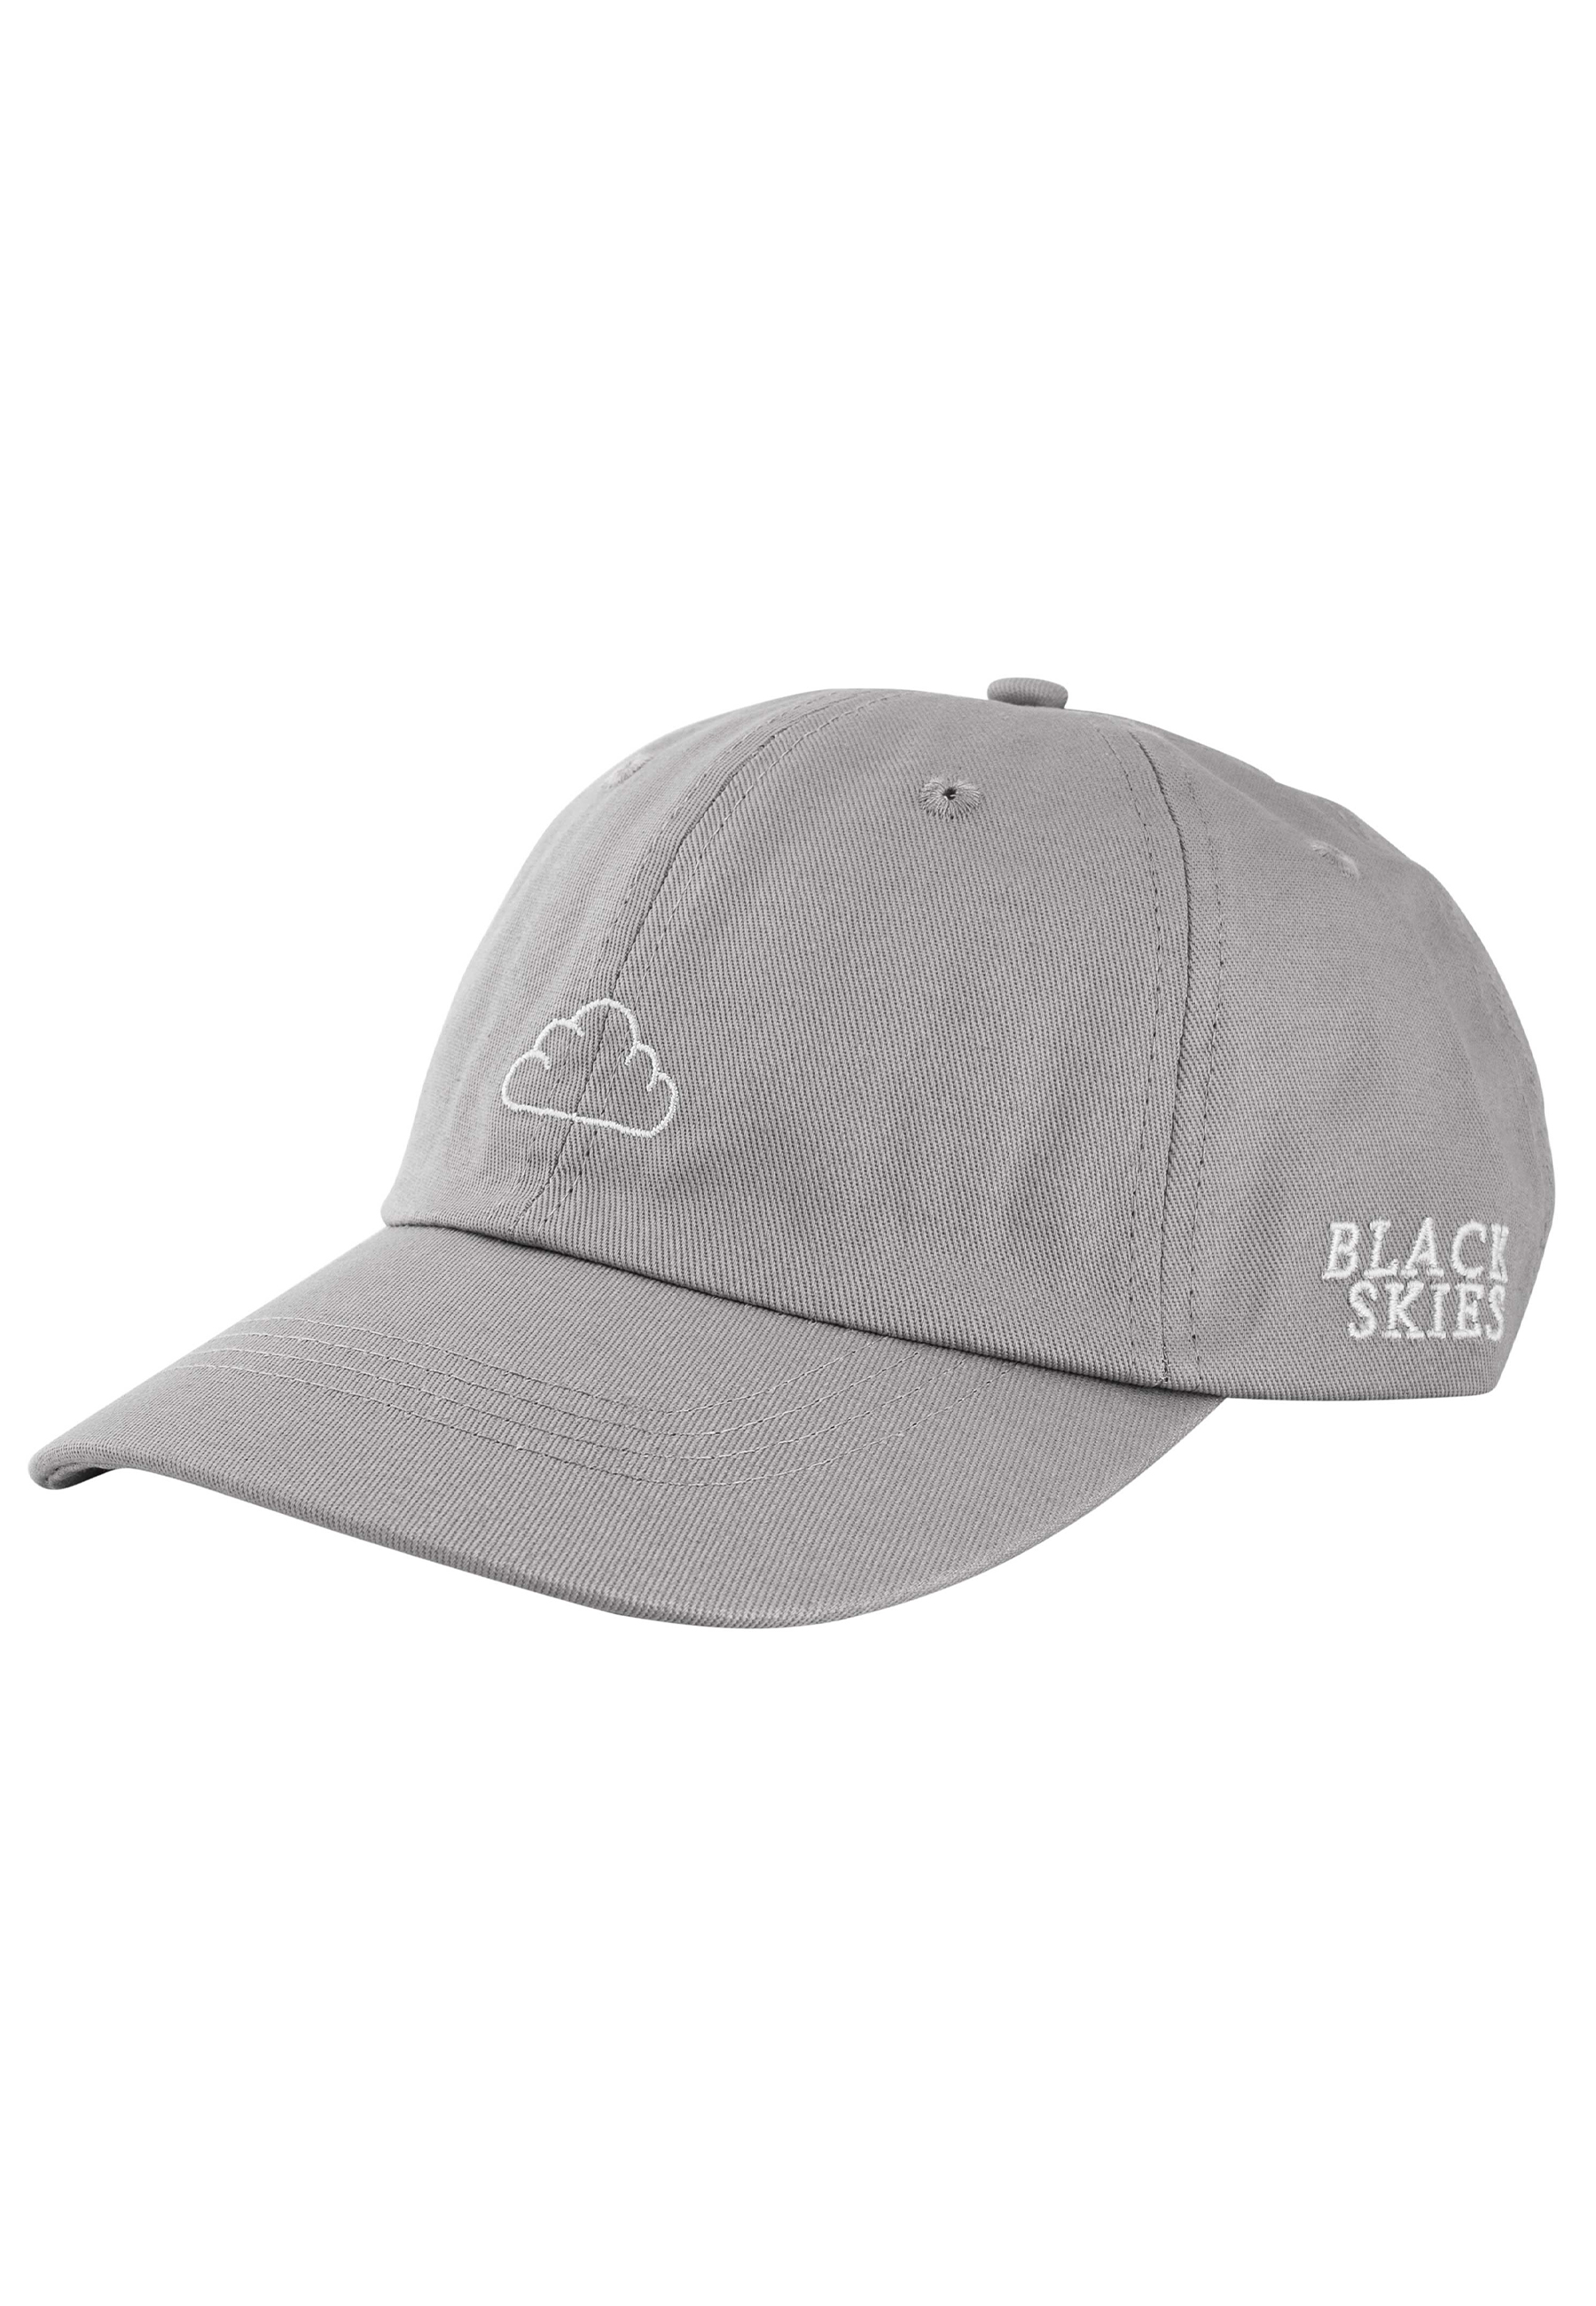 Blackskies Razor Baseball cap blanco-Olive SnapBack gorra ha basecap Cappy